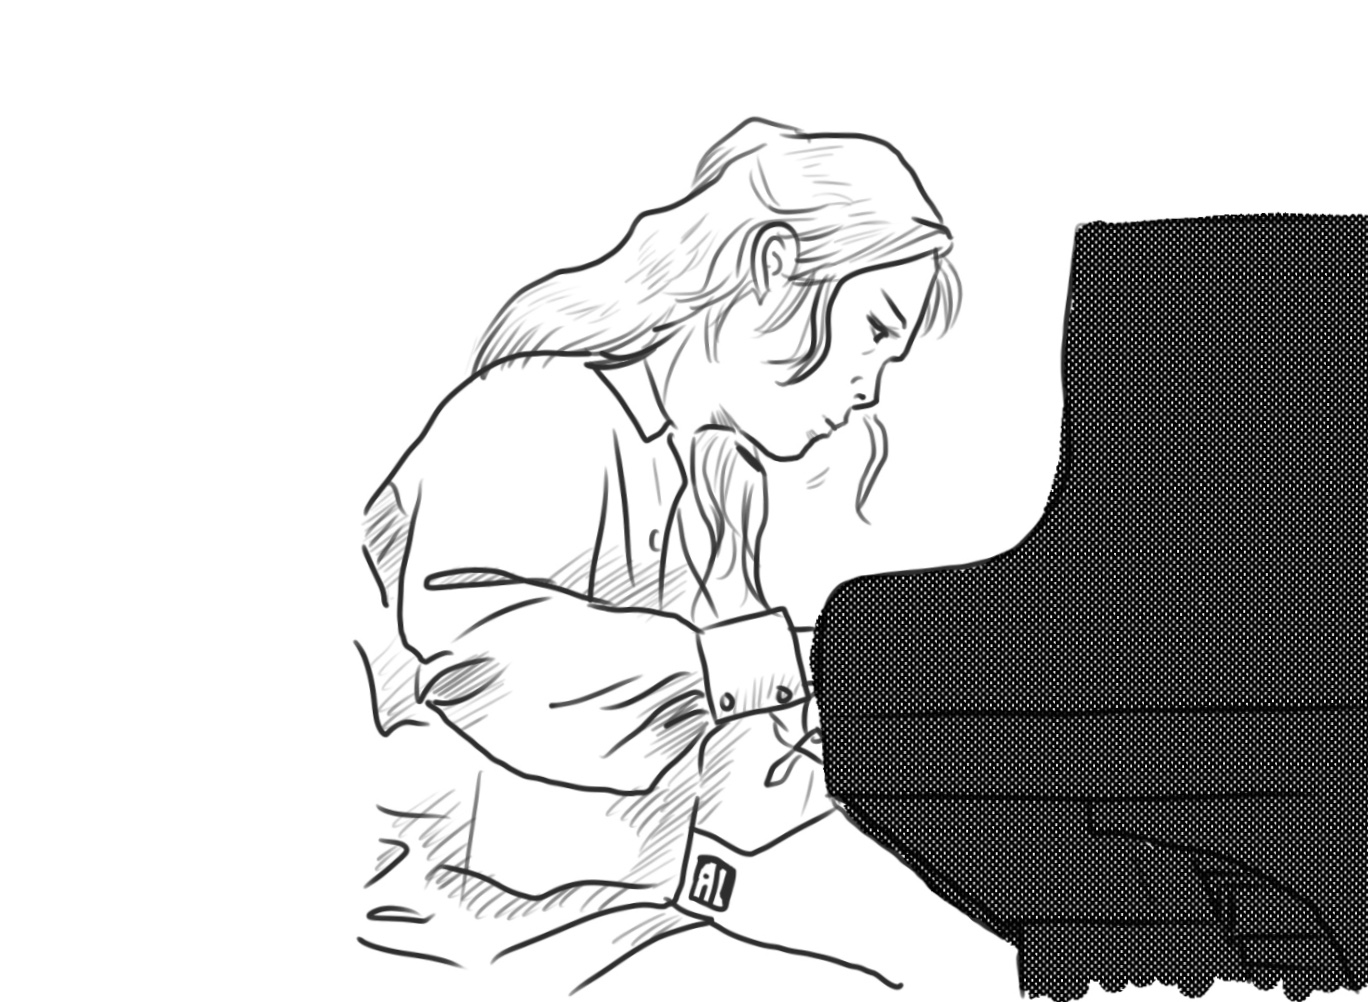 피아노의 날을 아시나요?